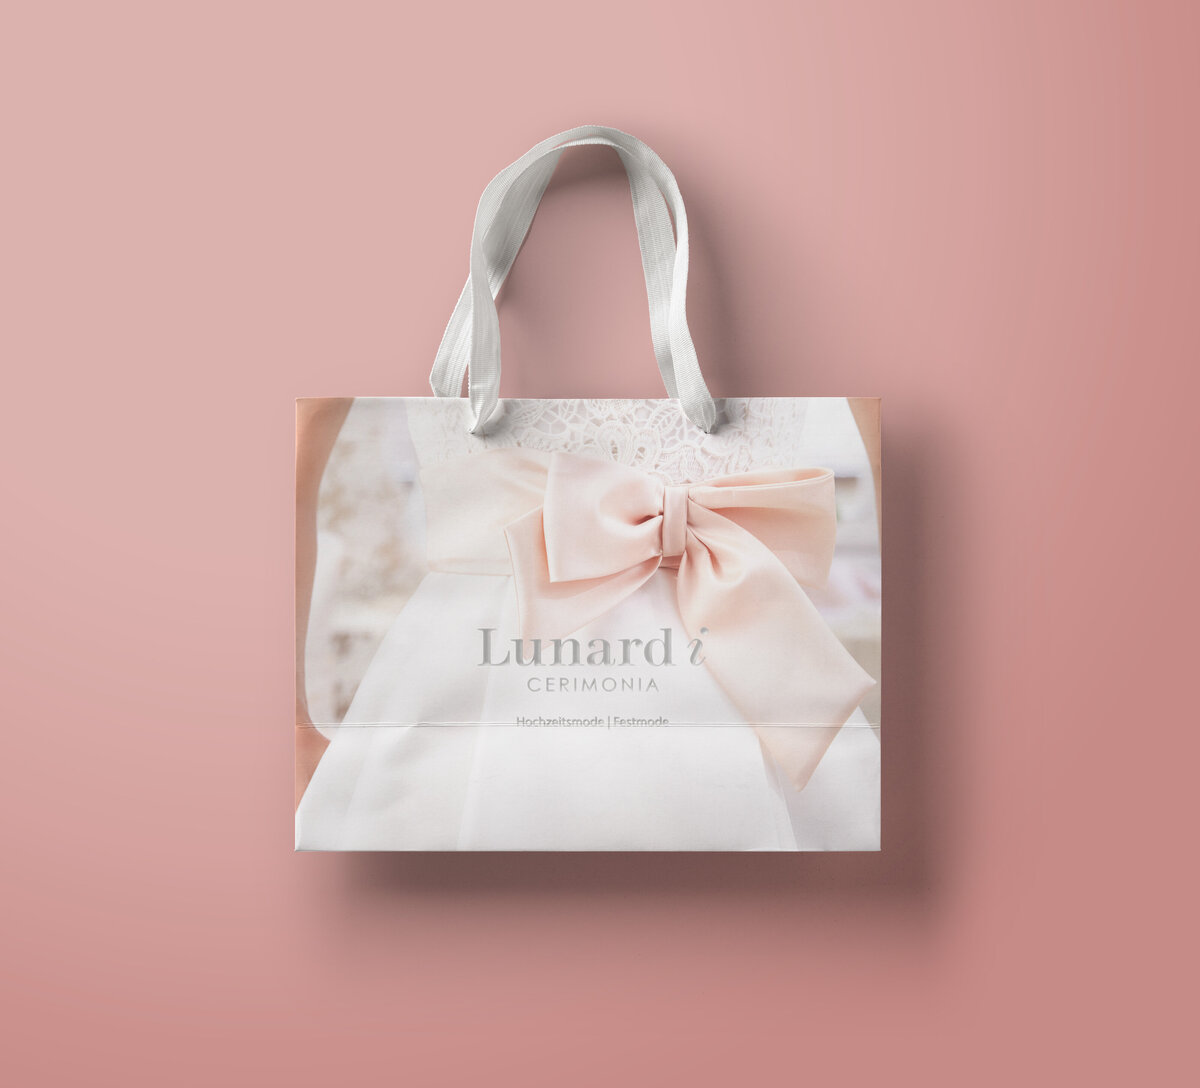 Lunardi_Shopping-Bag-Mockup-vol2